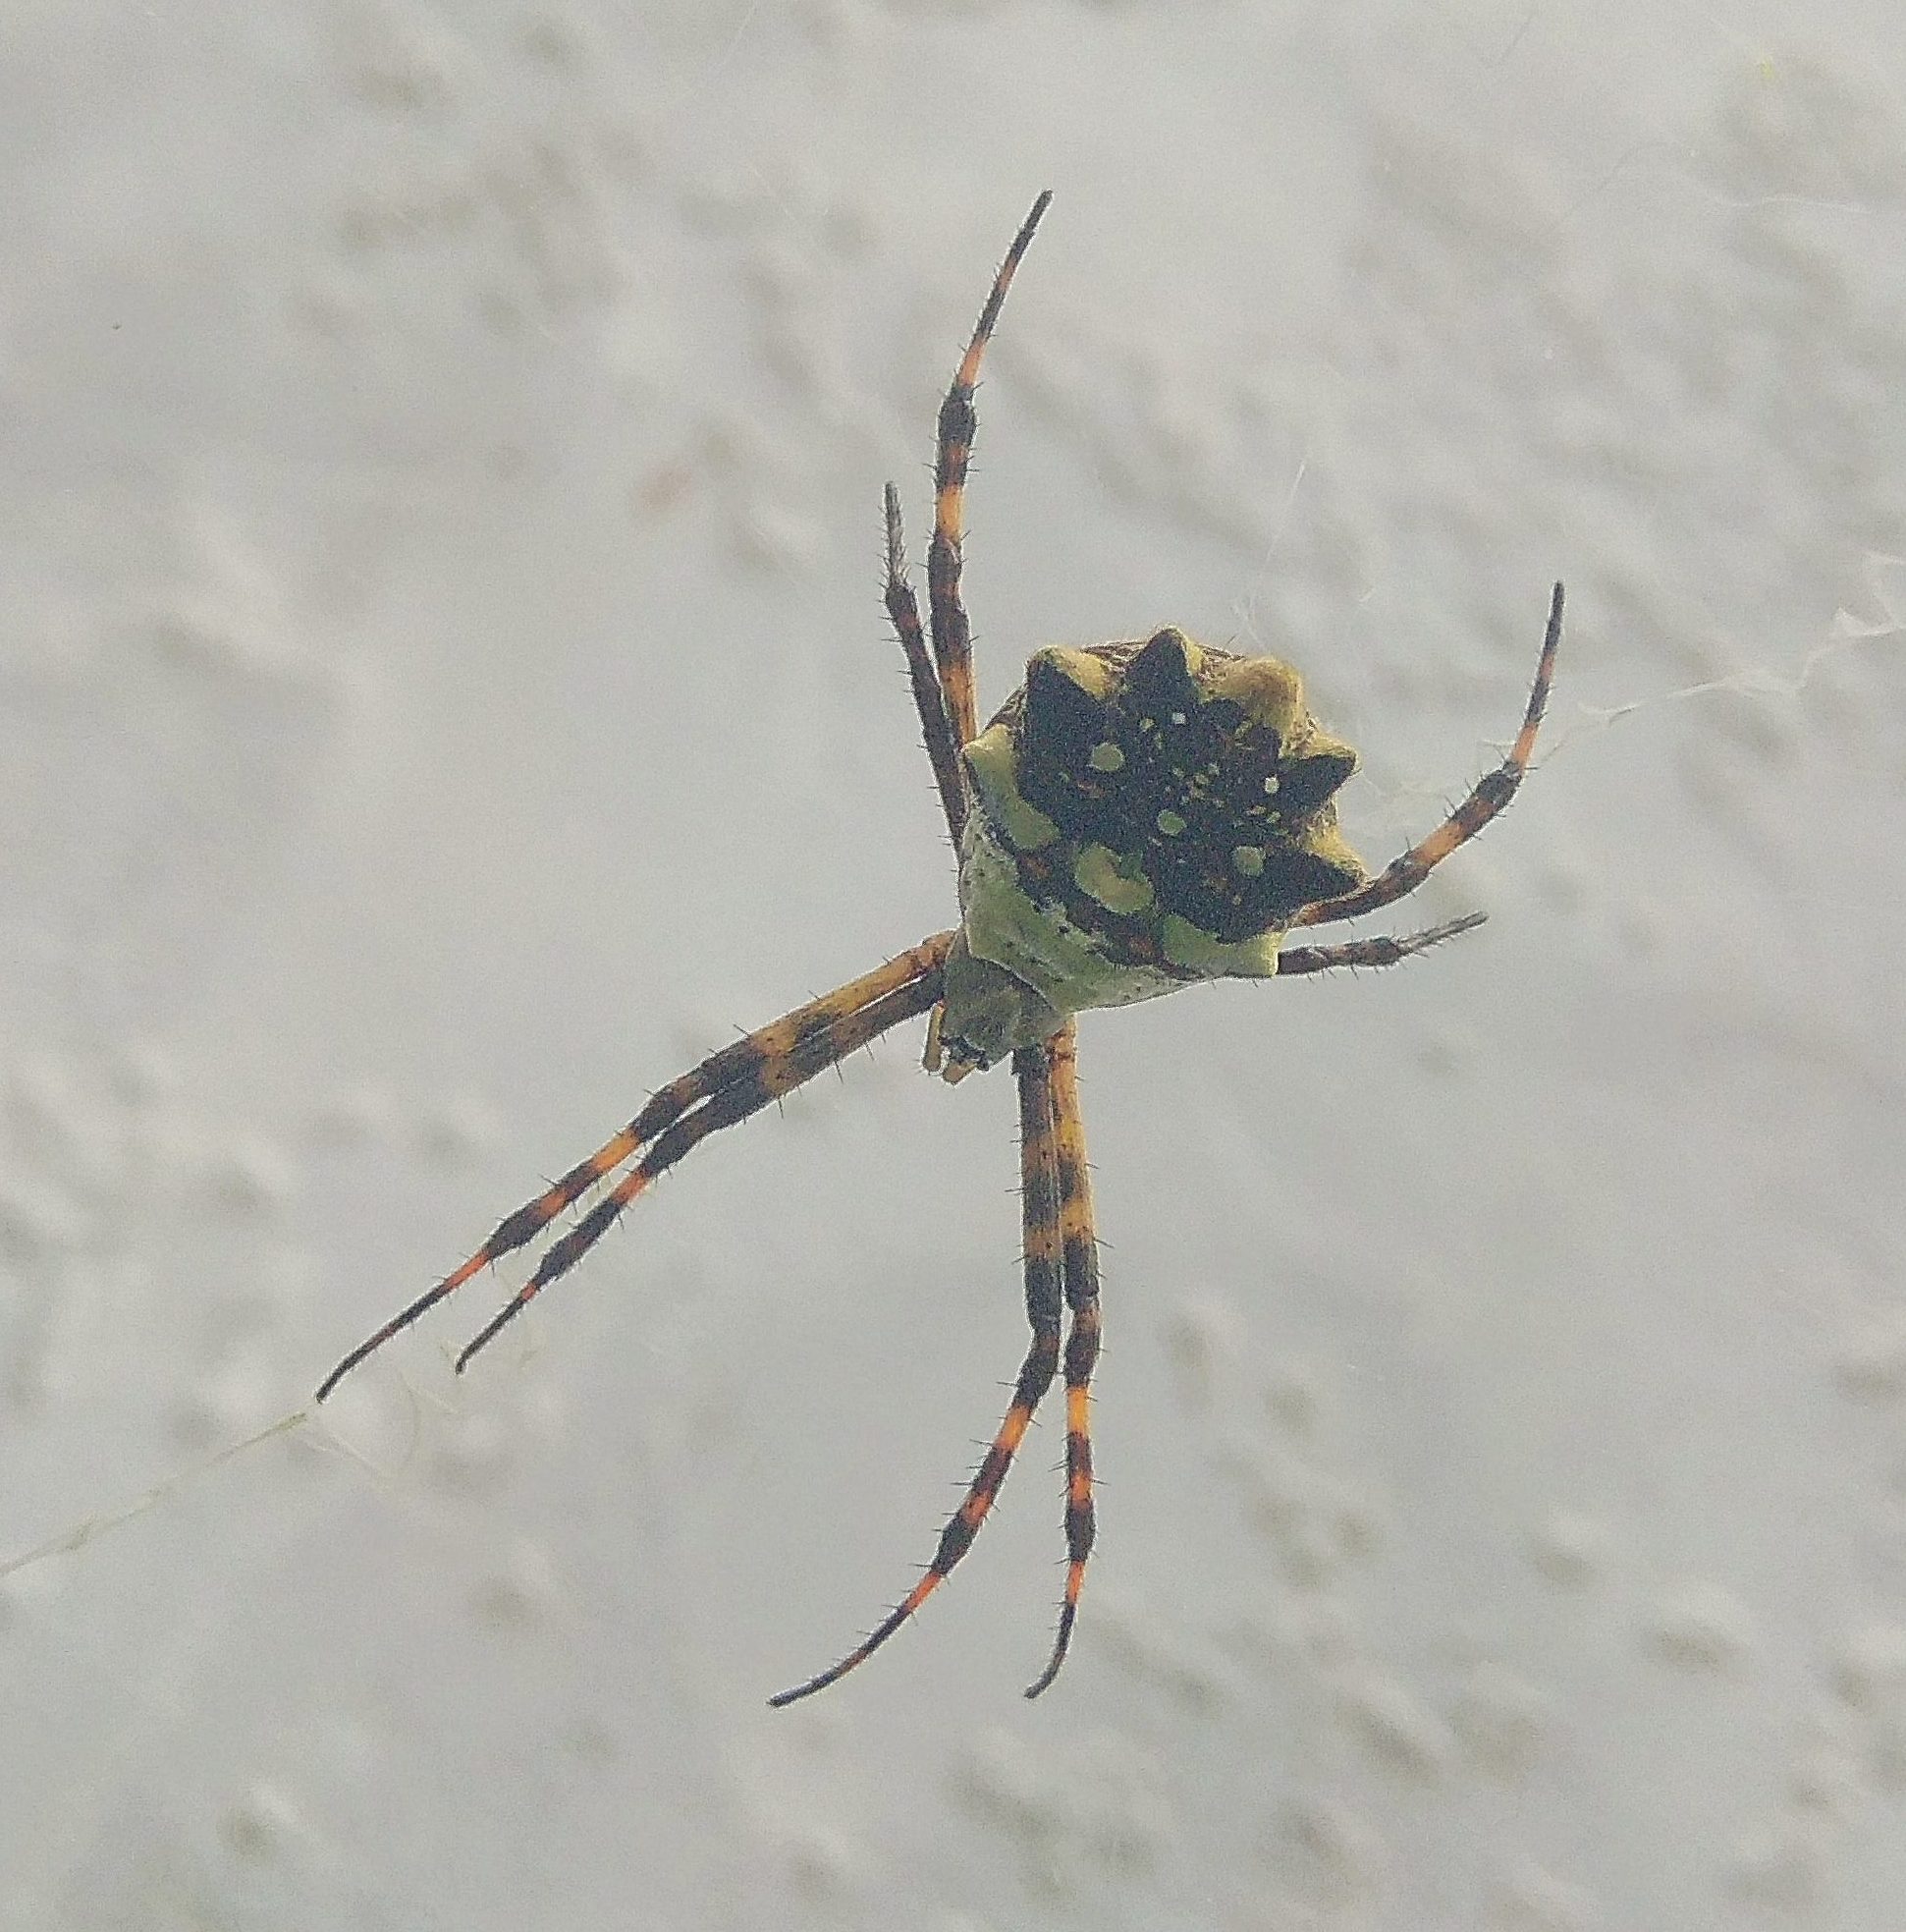 Picture of Argiope argentata (Silver Garden Spider) - Dorsal